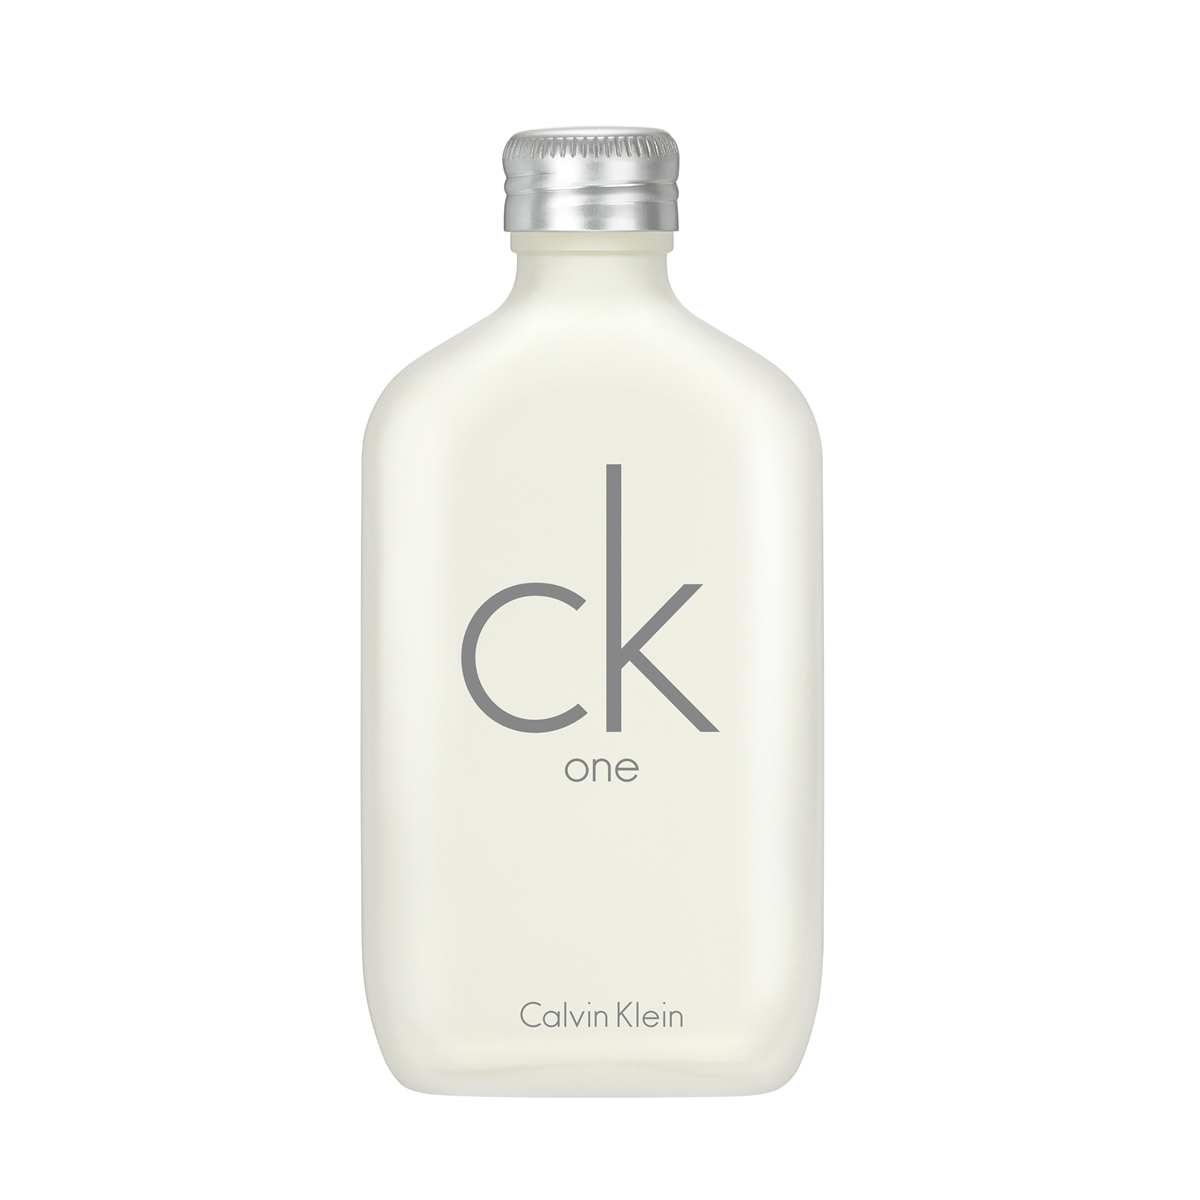 CK One, de Calvin Klein.